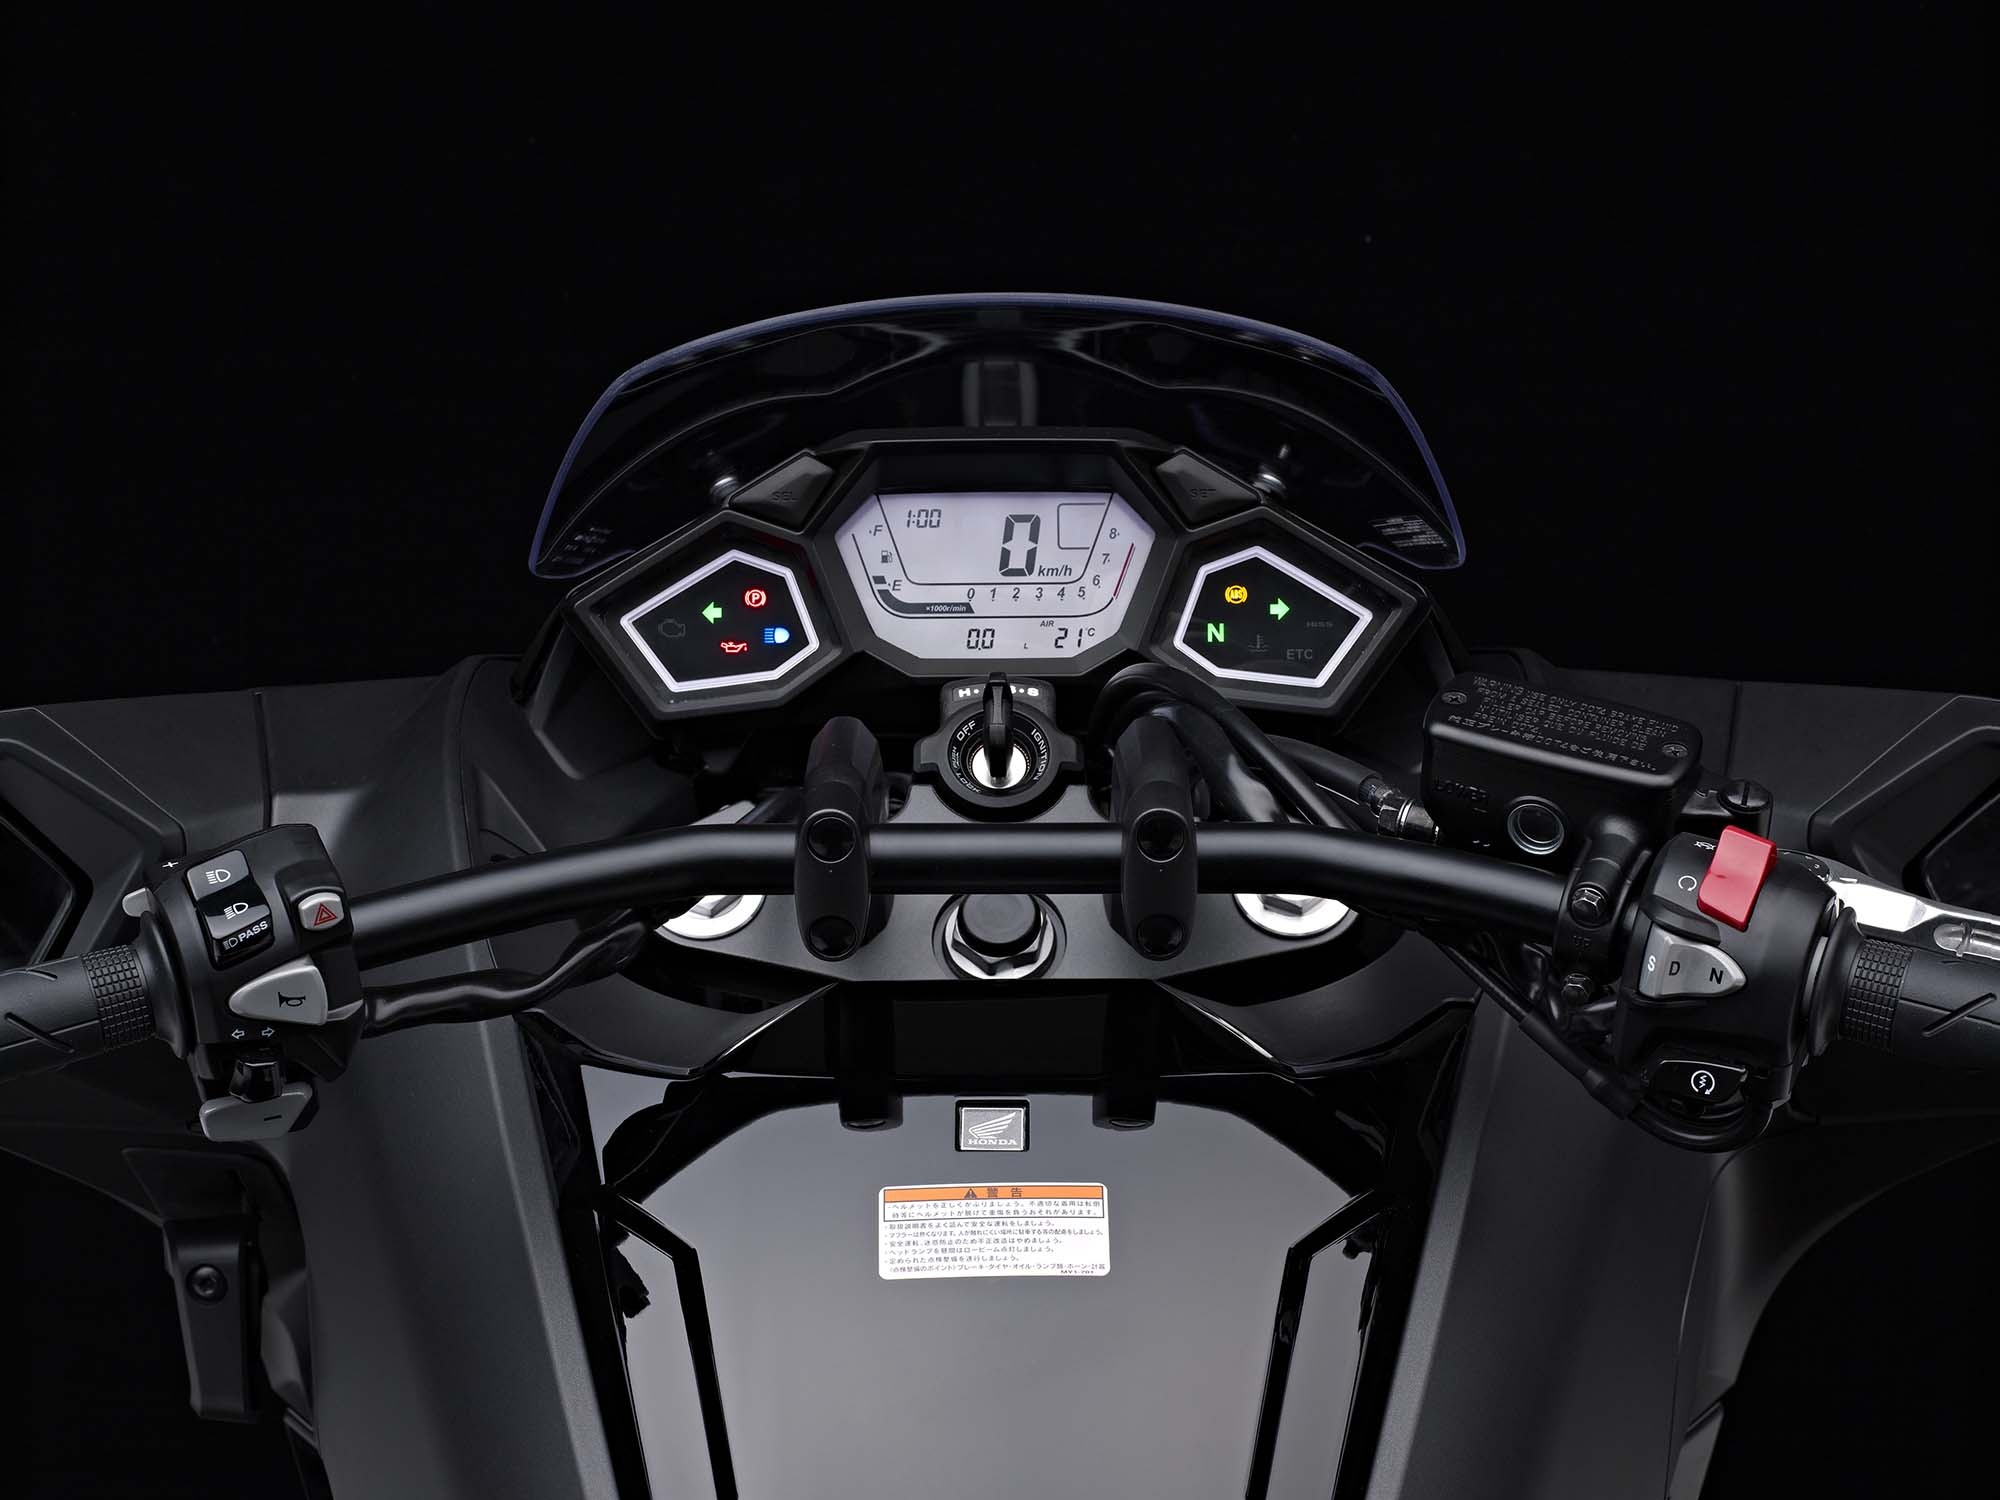 Honda NM4, 2014 Honda NM4 Vultus, Motorbike debut, Asphalt & Rubber, 2000x1500 HD Desktop